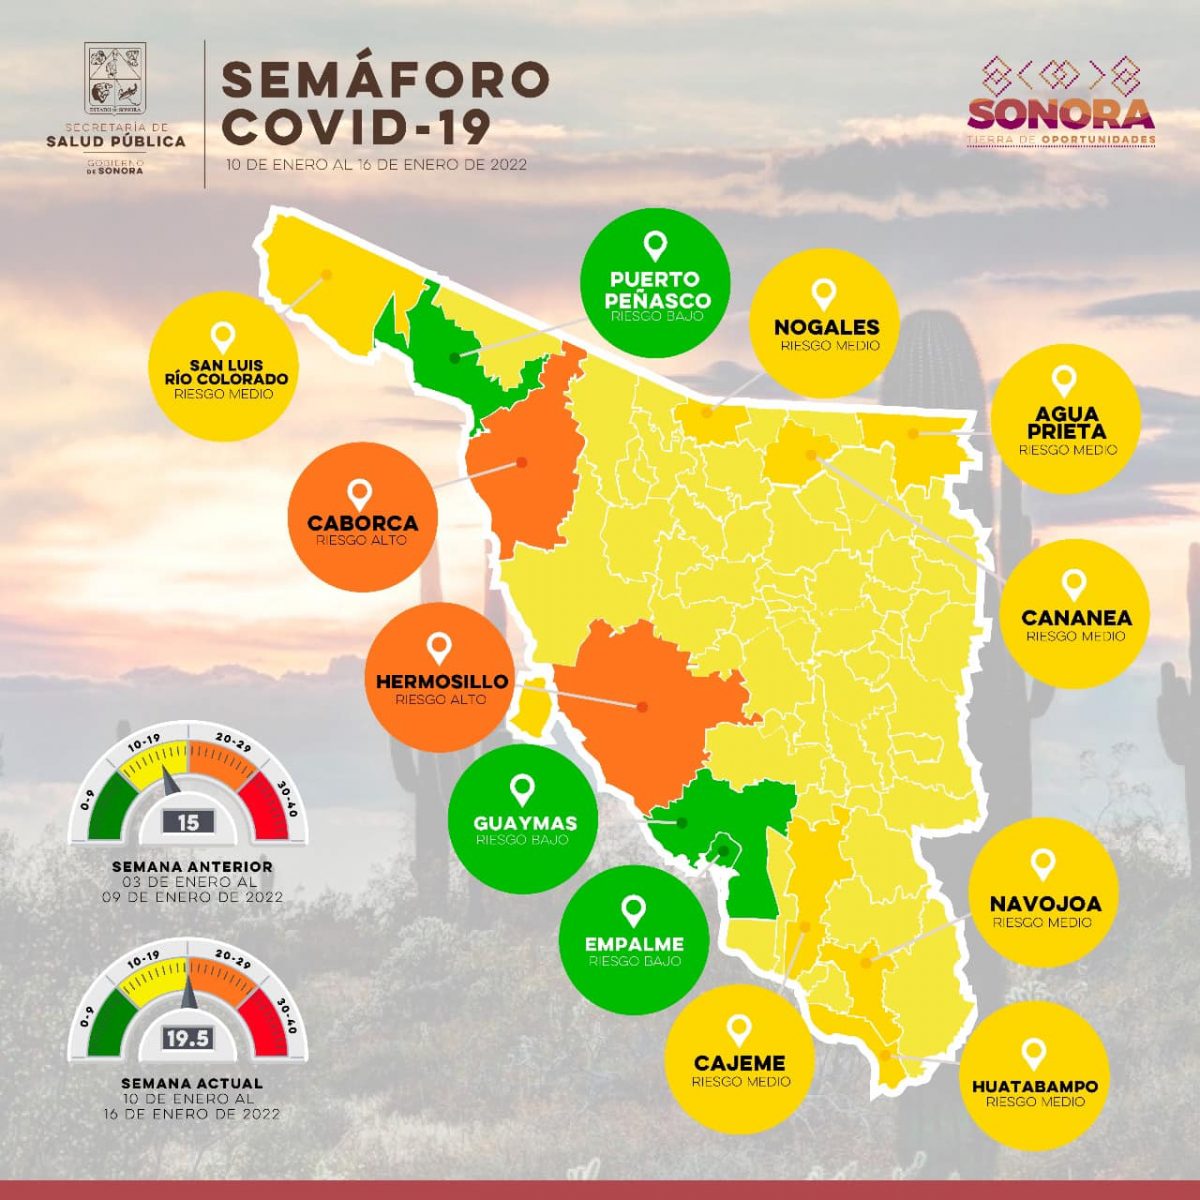 jan-10-16-Sonora-semaforo-1200x1200 Peñasco green though Covid cases rise in Sonora